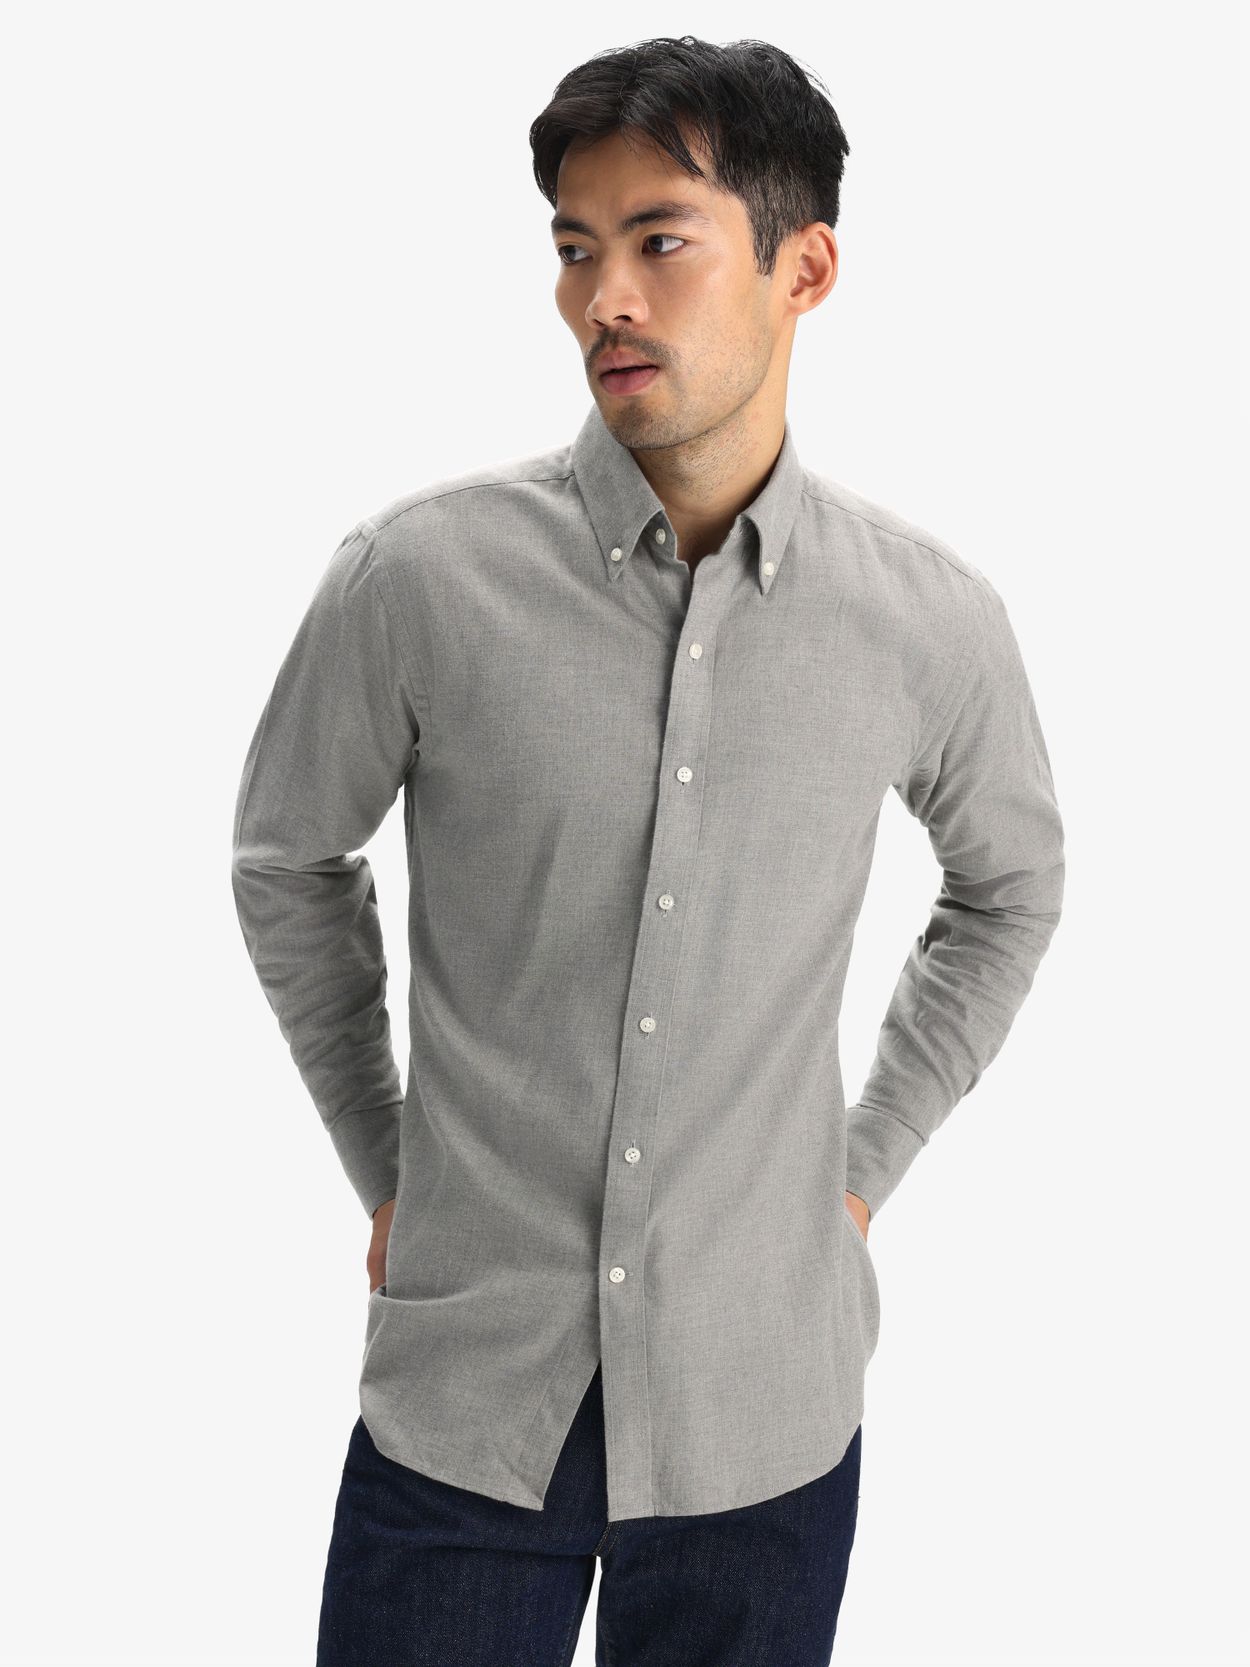 Grey Flannel Shirt